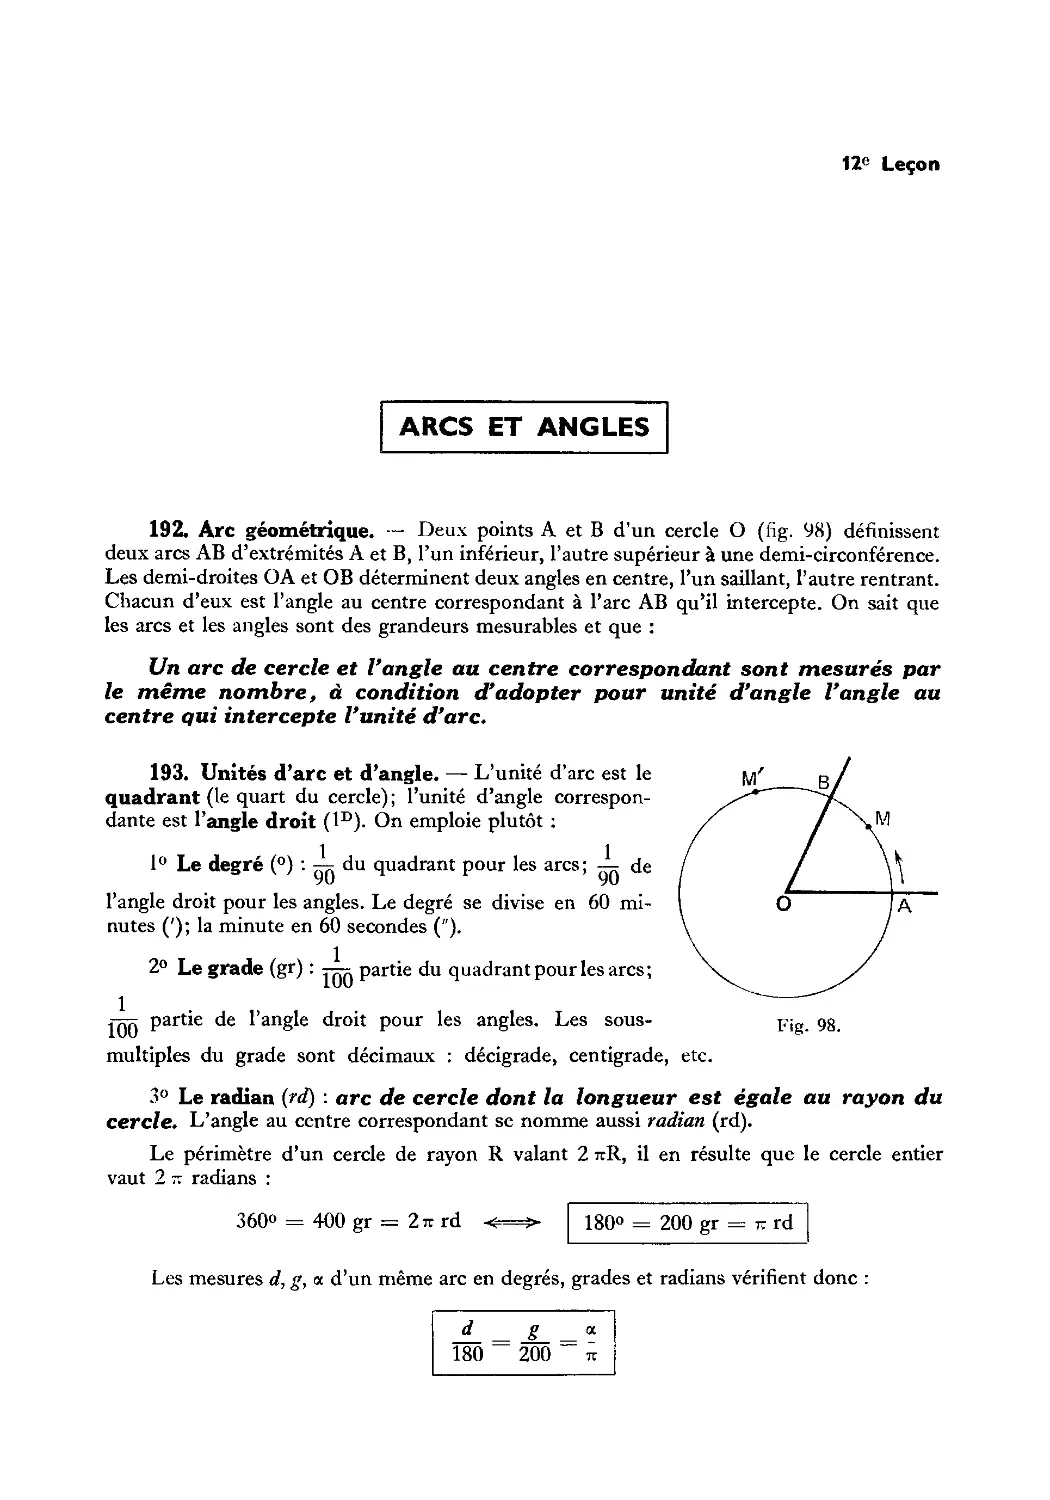 Leçon 12 — Arcs et angles
193. Unités d’arc et d’angle